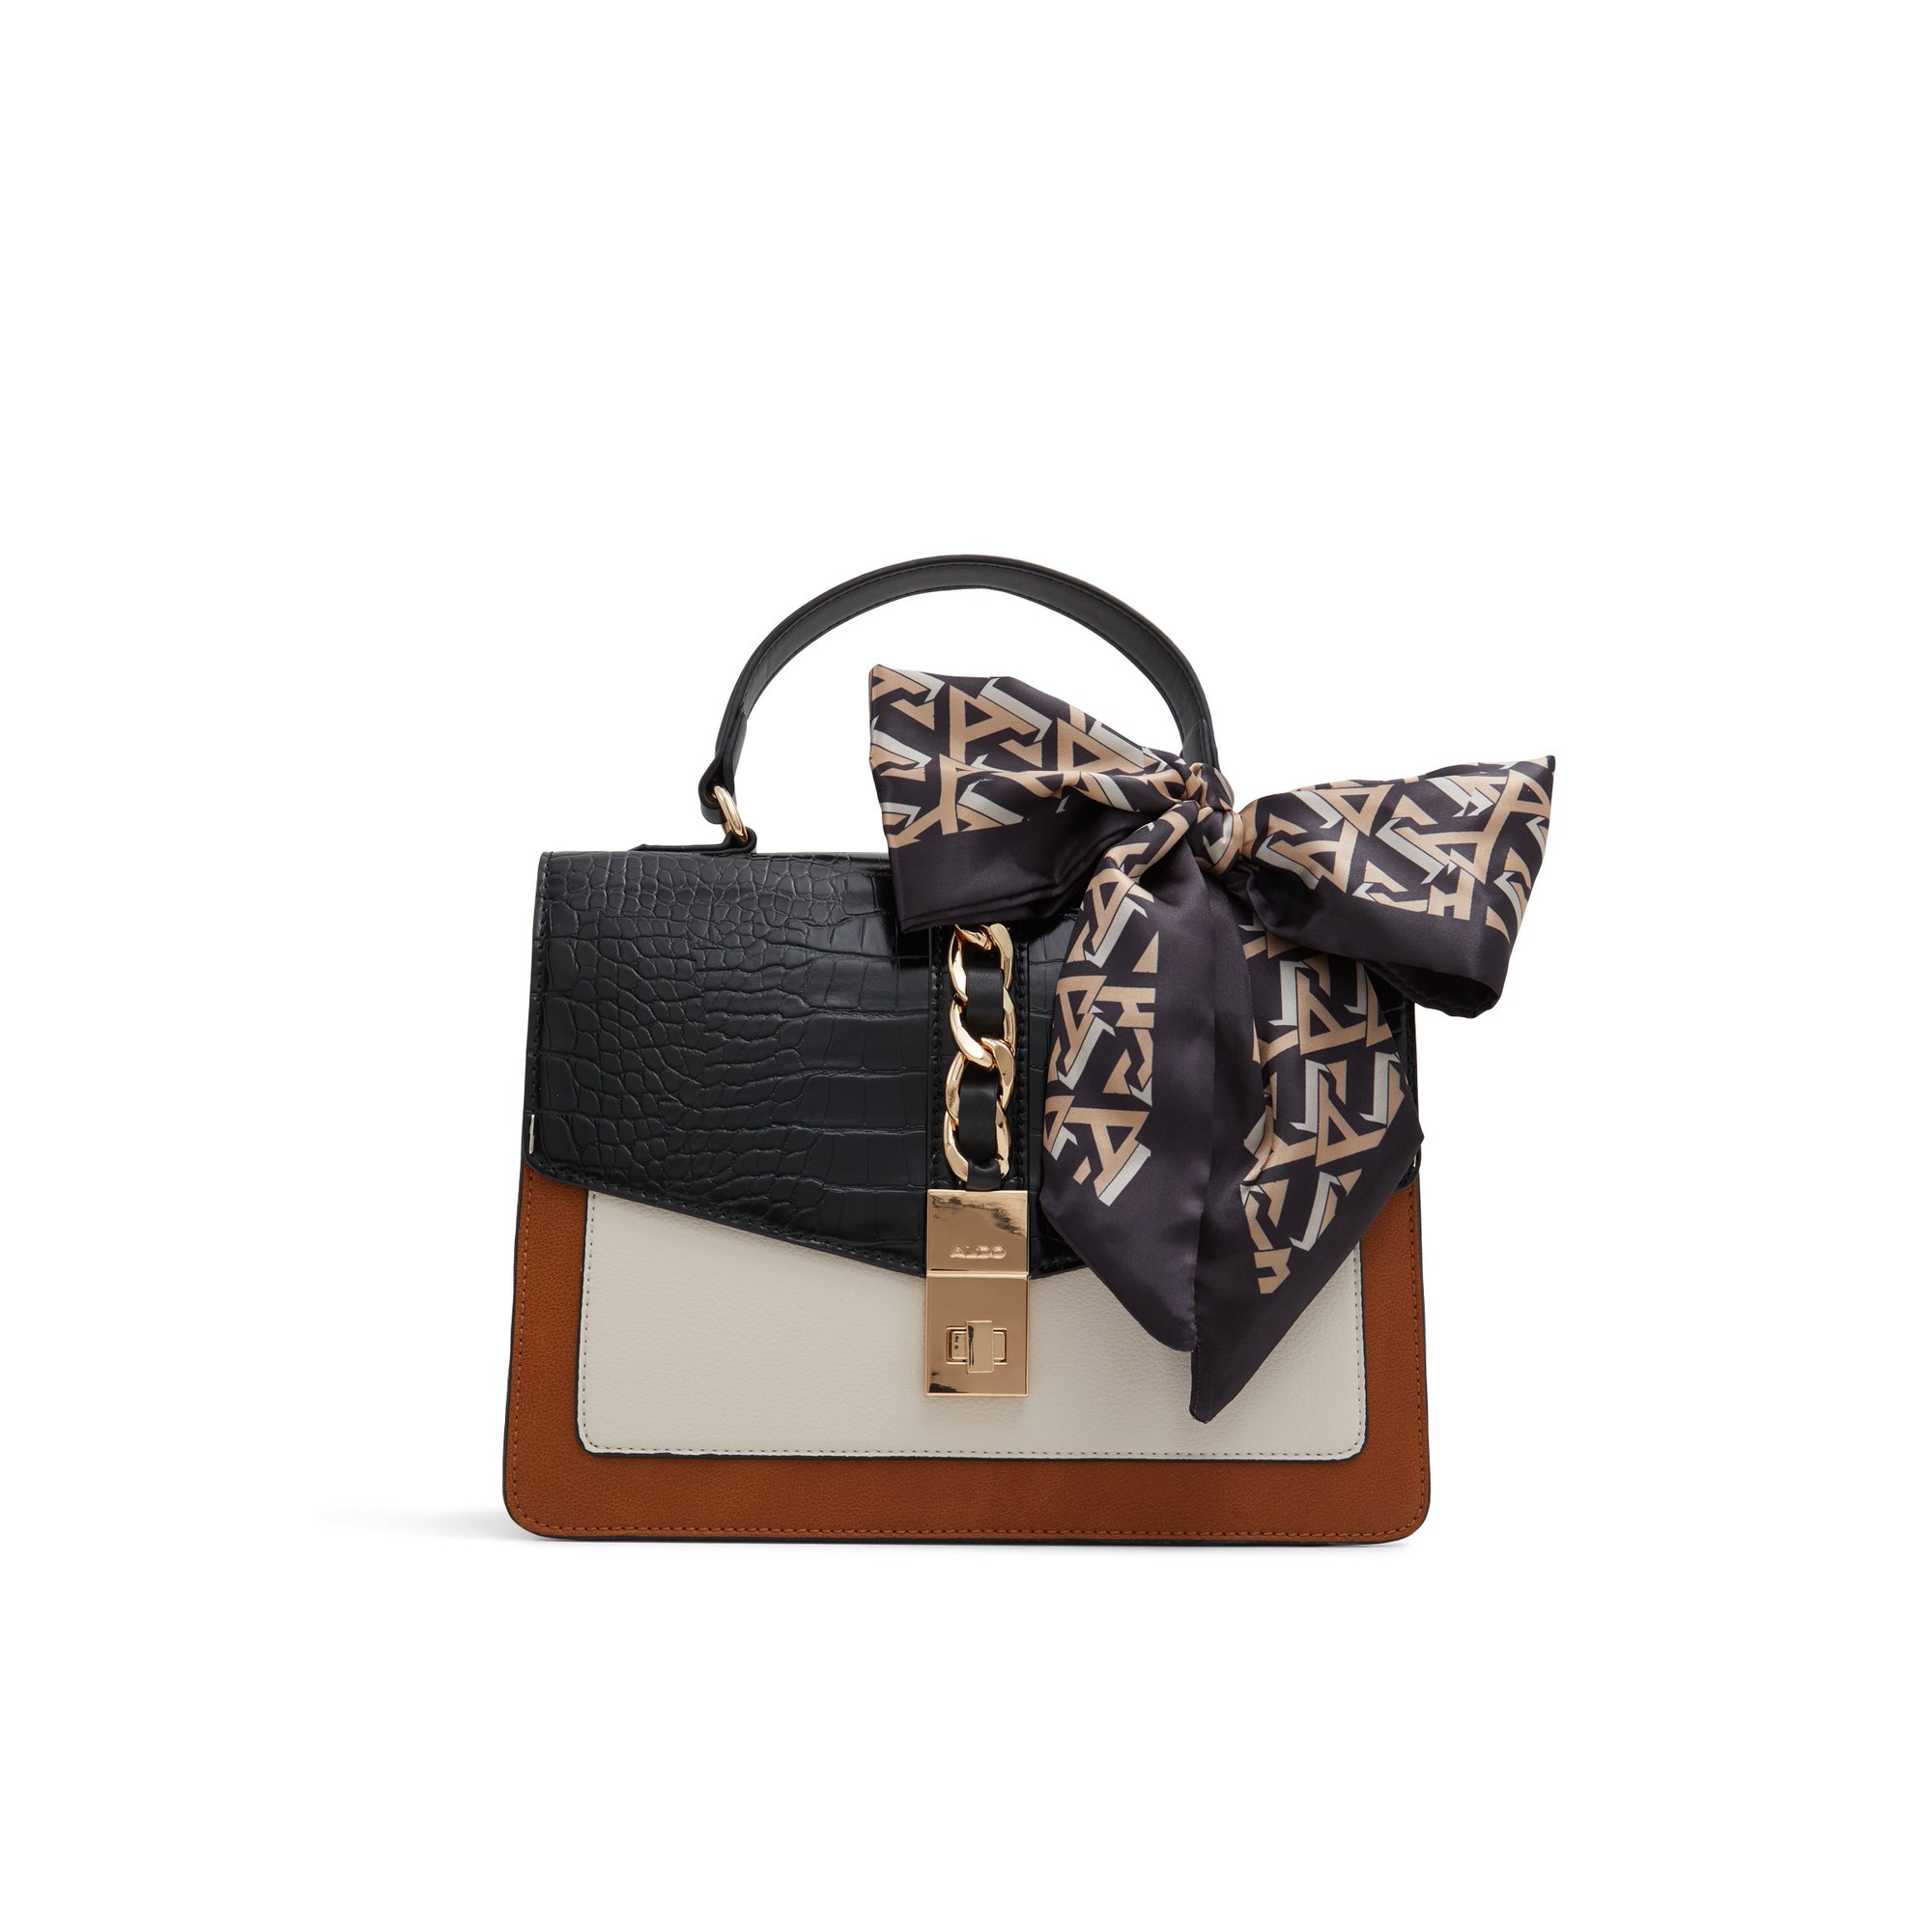 ALDO Caiillaa - Women's Top Handle Handbag - Black